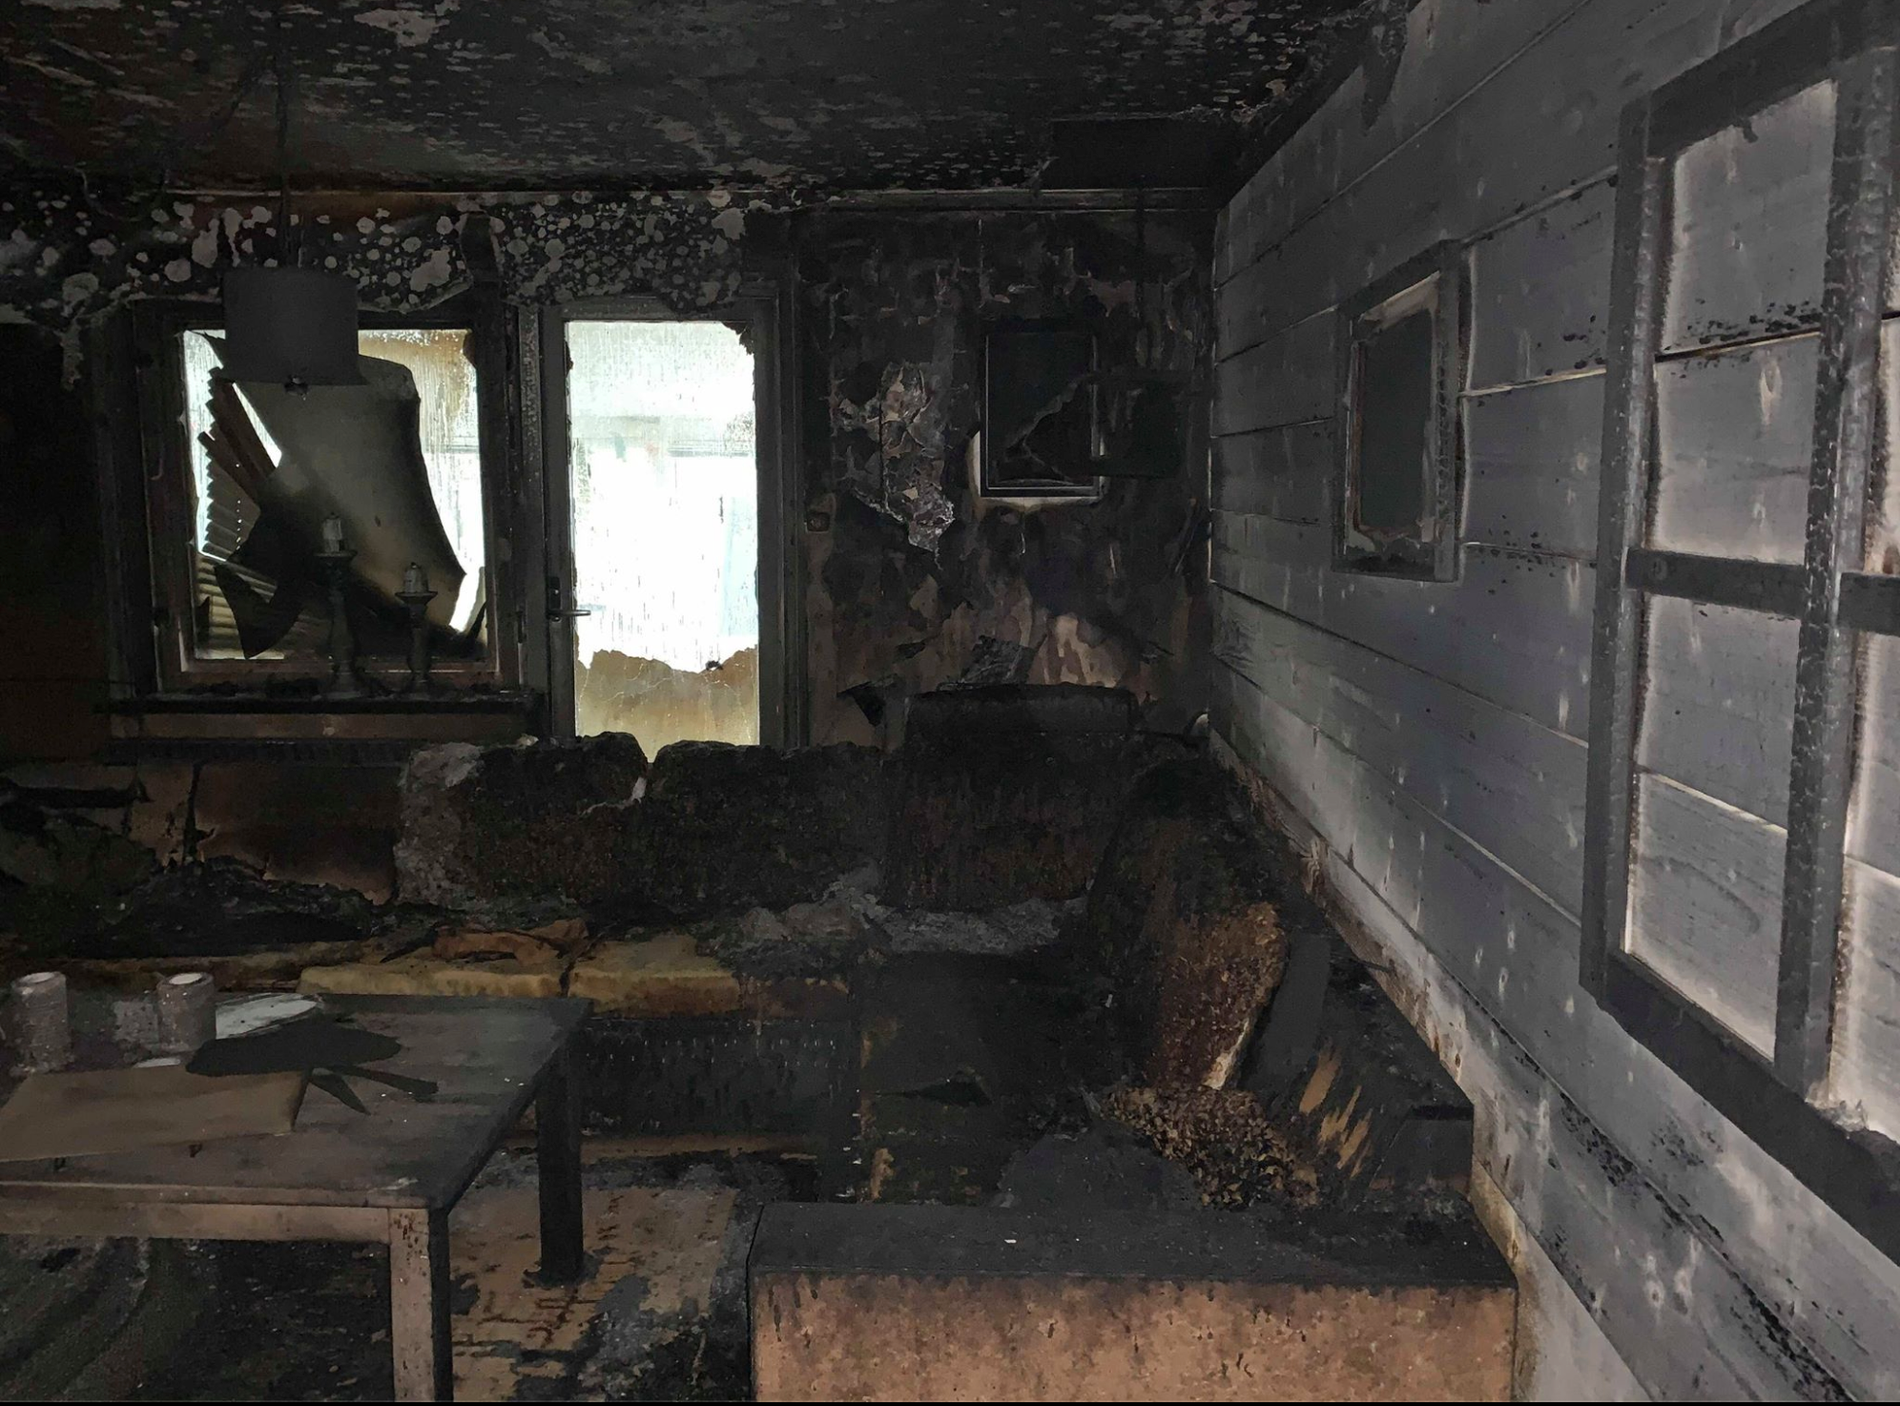 Det var här i vardagsrummet som branden startade, enligt räddningstjänstens utredning. De kom dock aldrig fram till vad som orsakat den. 